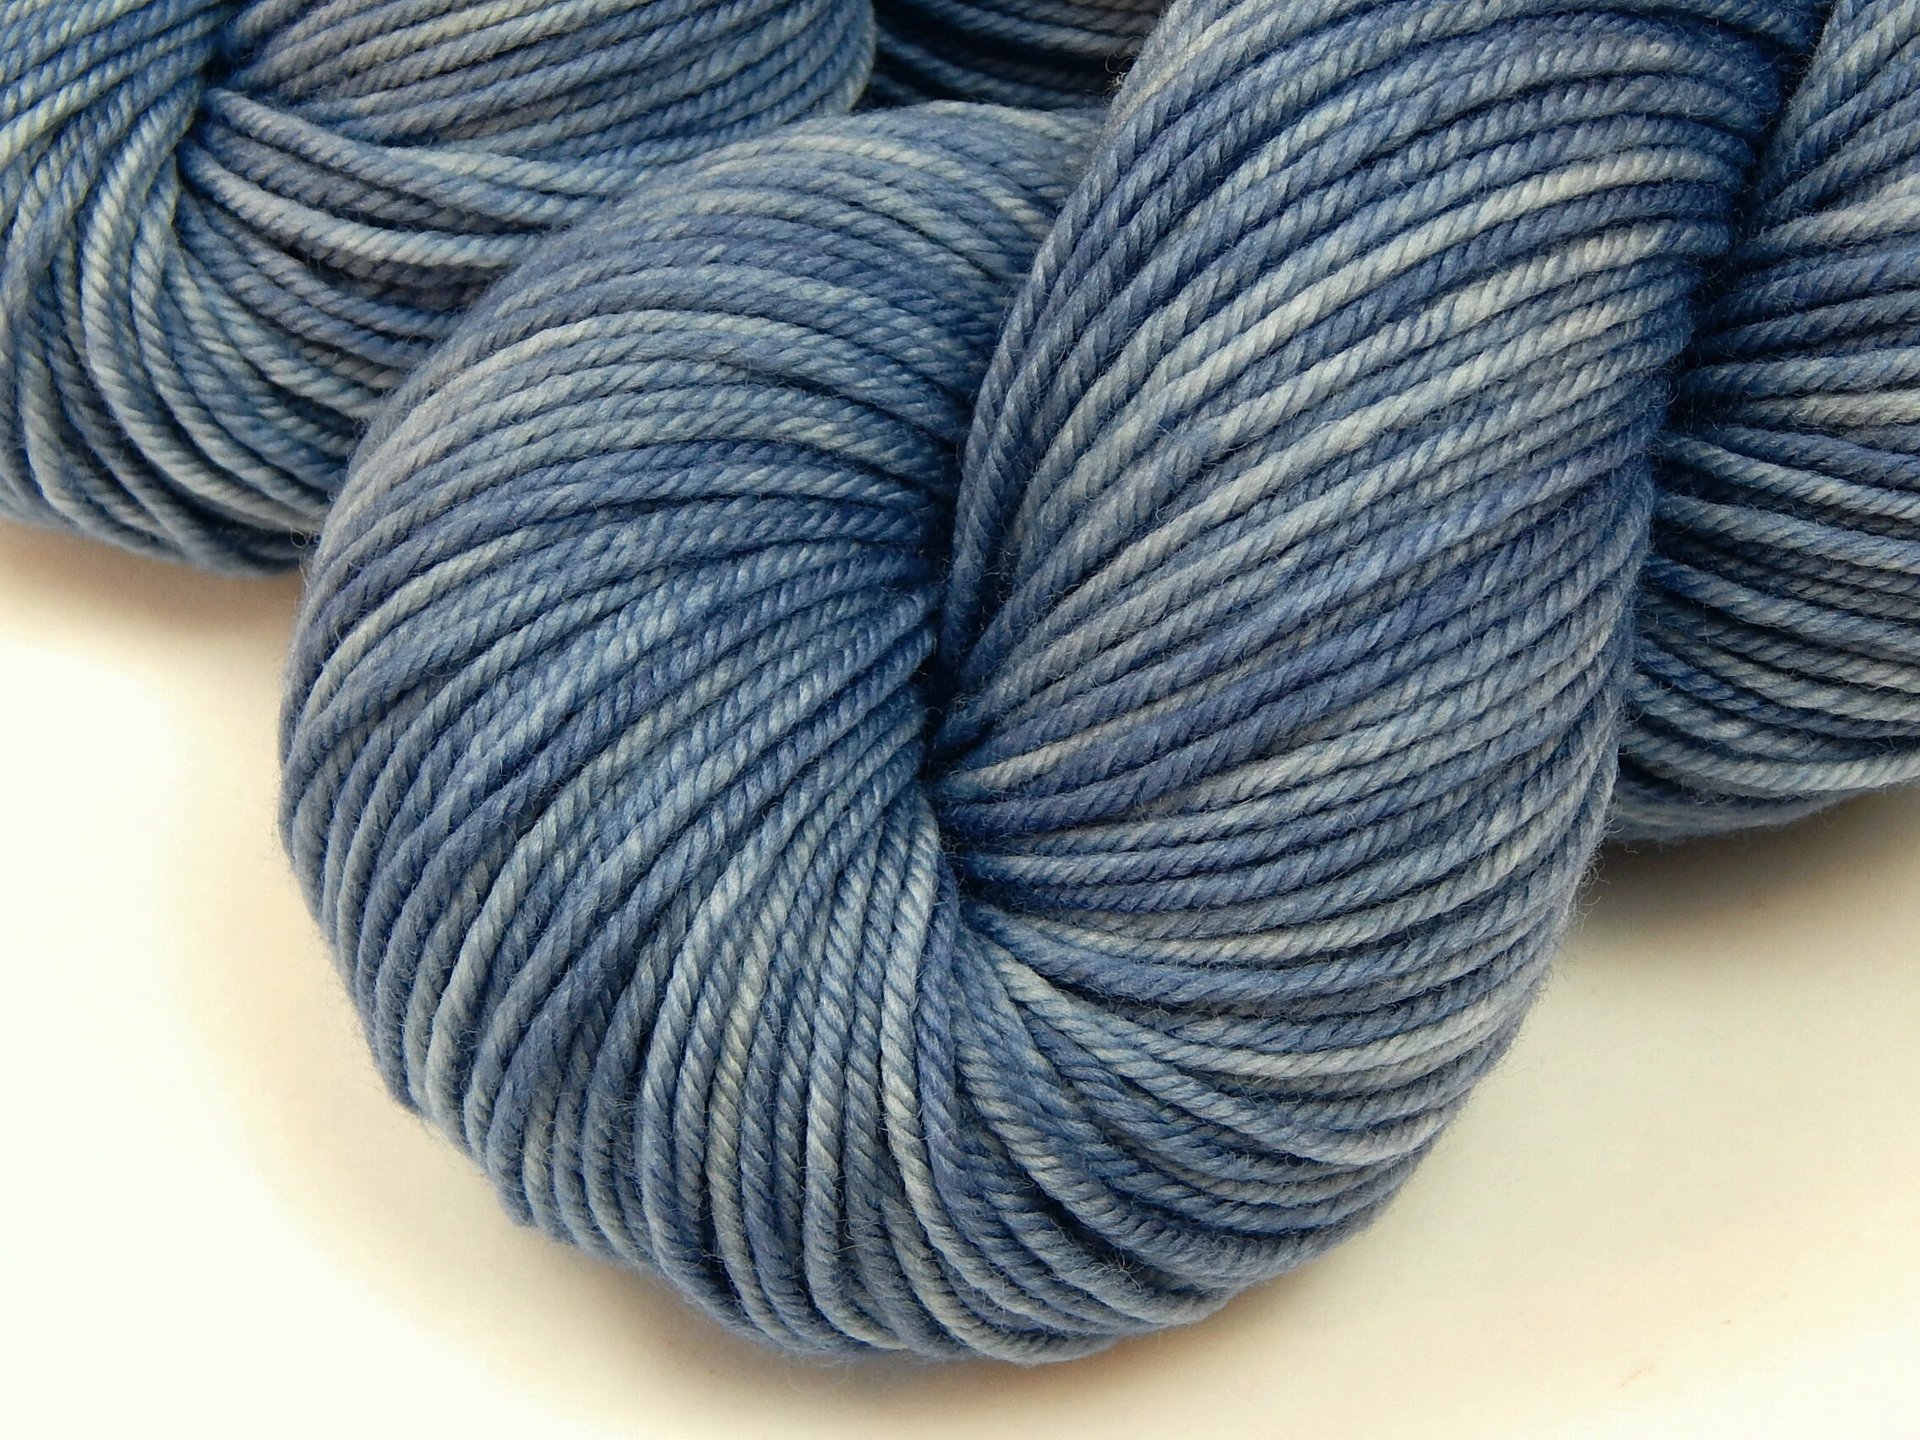 Hand Dyed Yarn, DK Weight Superwash Merino Wool - Bluebird - Soft Washable Medium Blue Indie Dyer Yarn, Tonal Yarn for Knitting Crochet